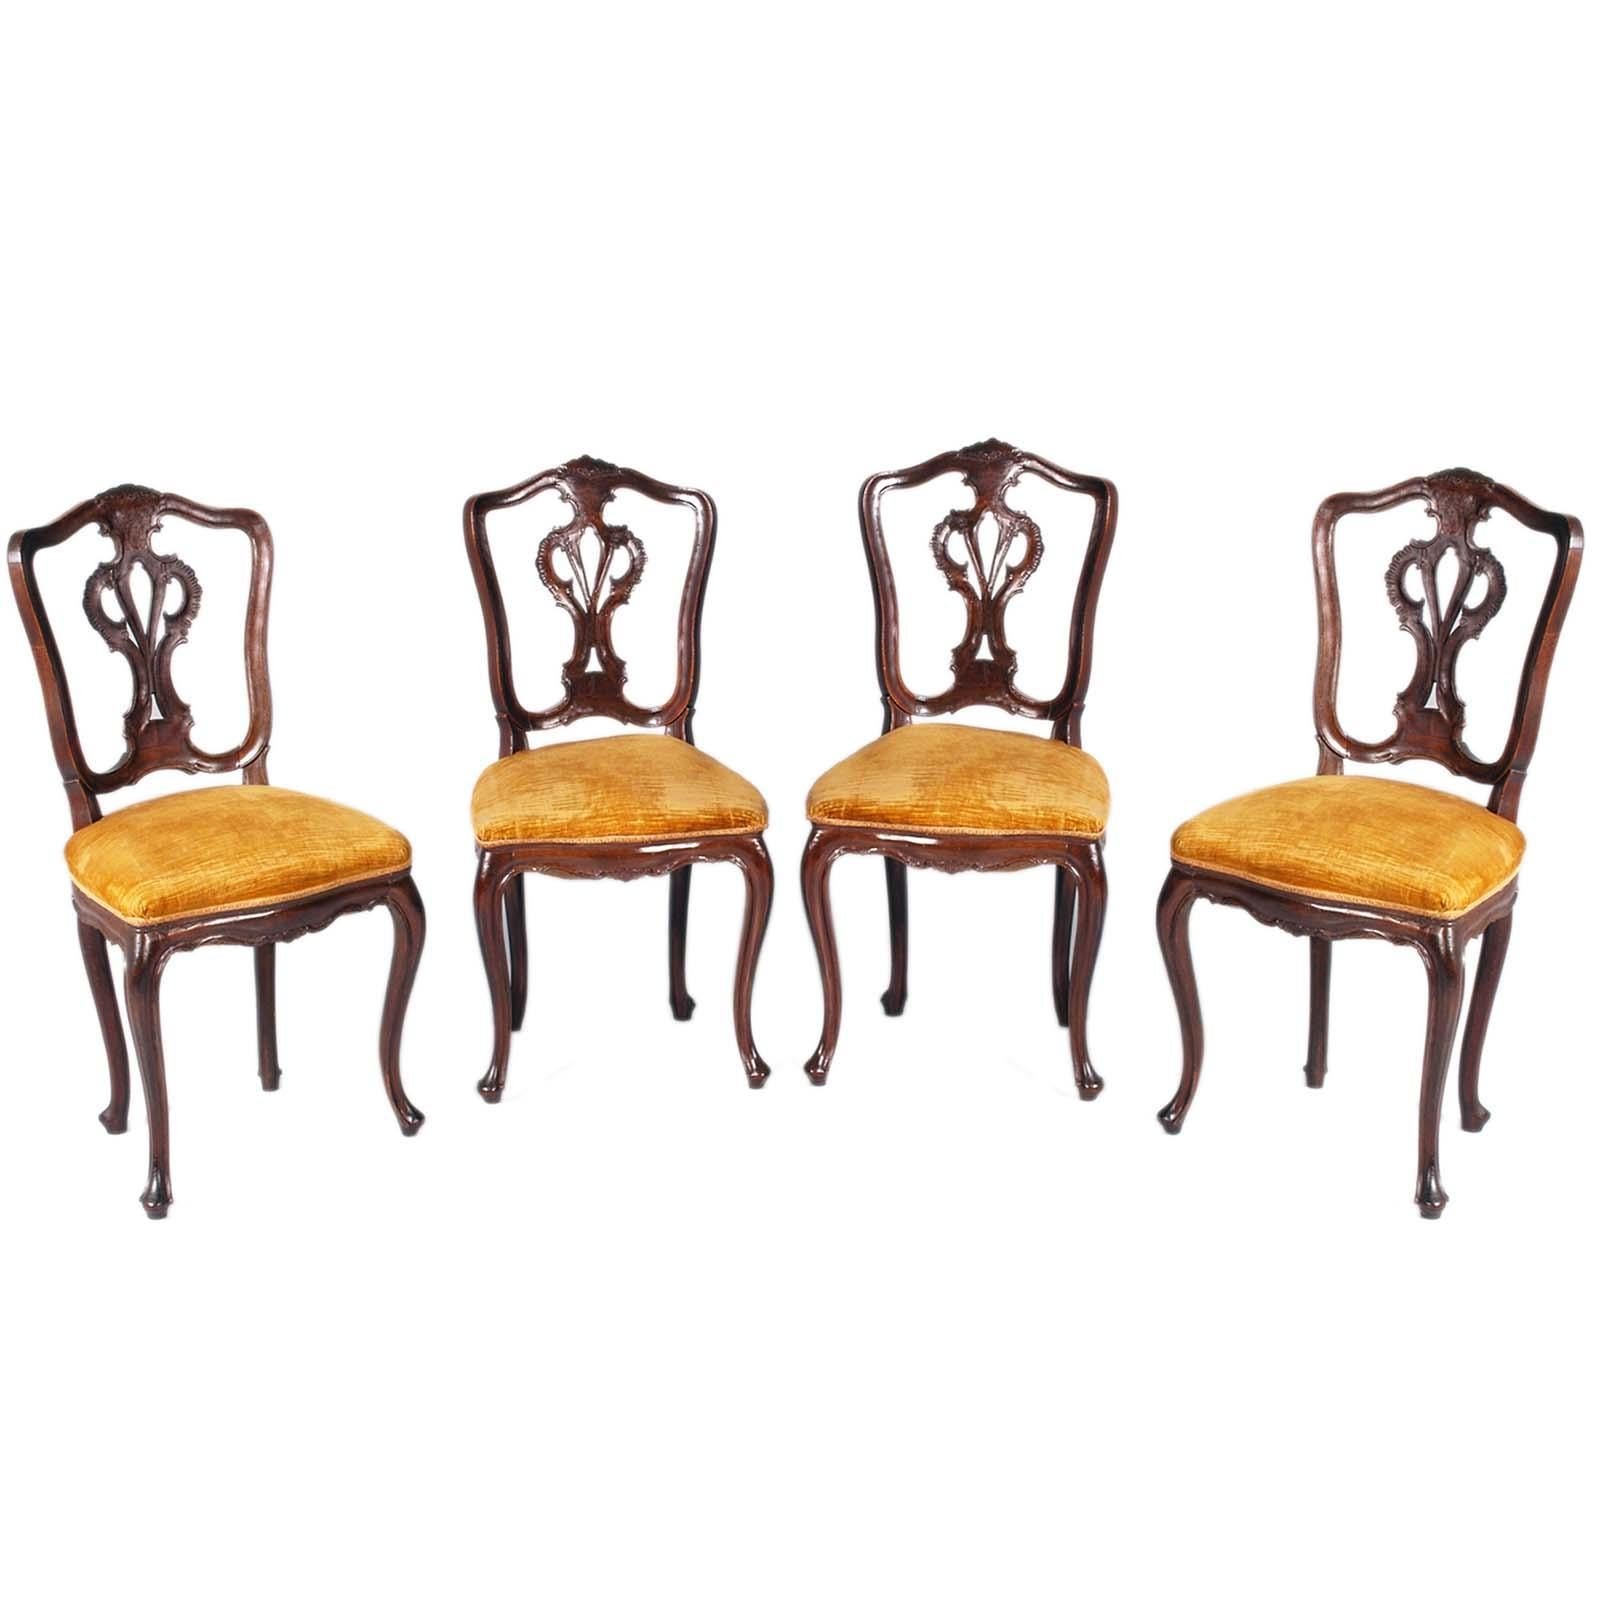 Venise raffinée Quatre chaises Louis XVI, 19e siècle, avec revêtement en velours encore utilisable, pouvant être retapissé sur demande. Structure renforcée pour une utilisation quotidienne. Siège à ressort. Belle patine d'origine
Le design des